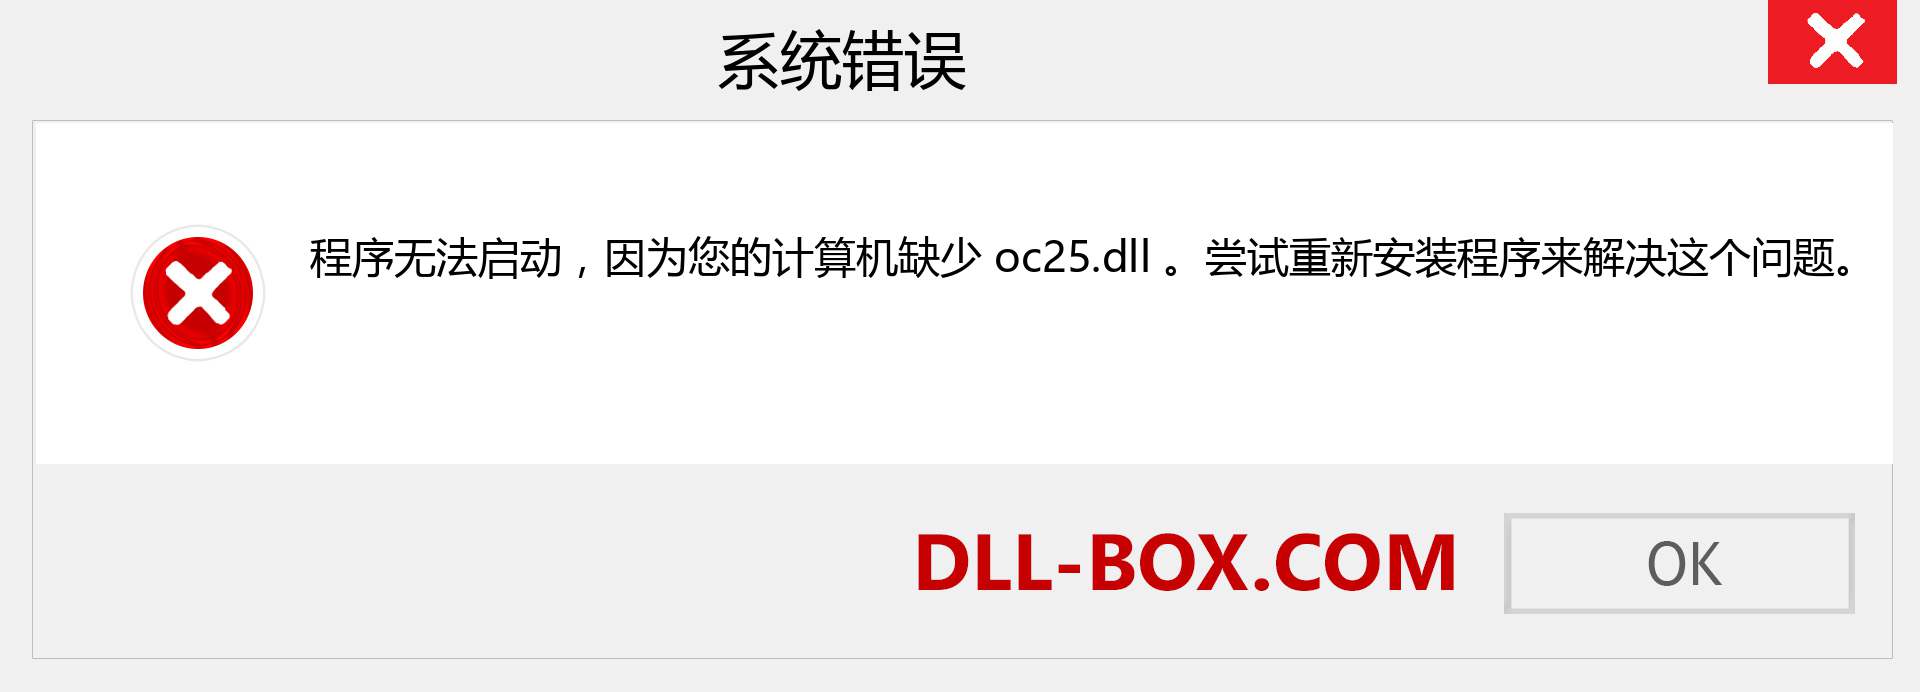 oc25.dll 文件丢失？。 适用于 Windows 7、8、10 的下载 - 修复 Windows、照片、图像上的 oc25 dll 丢失错误